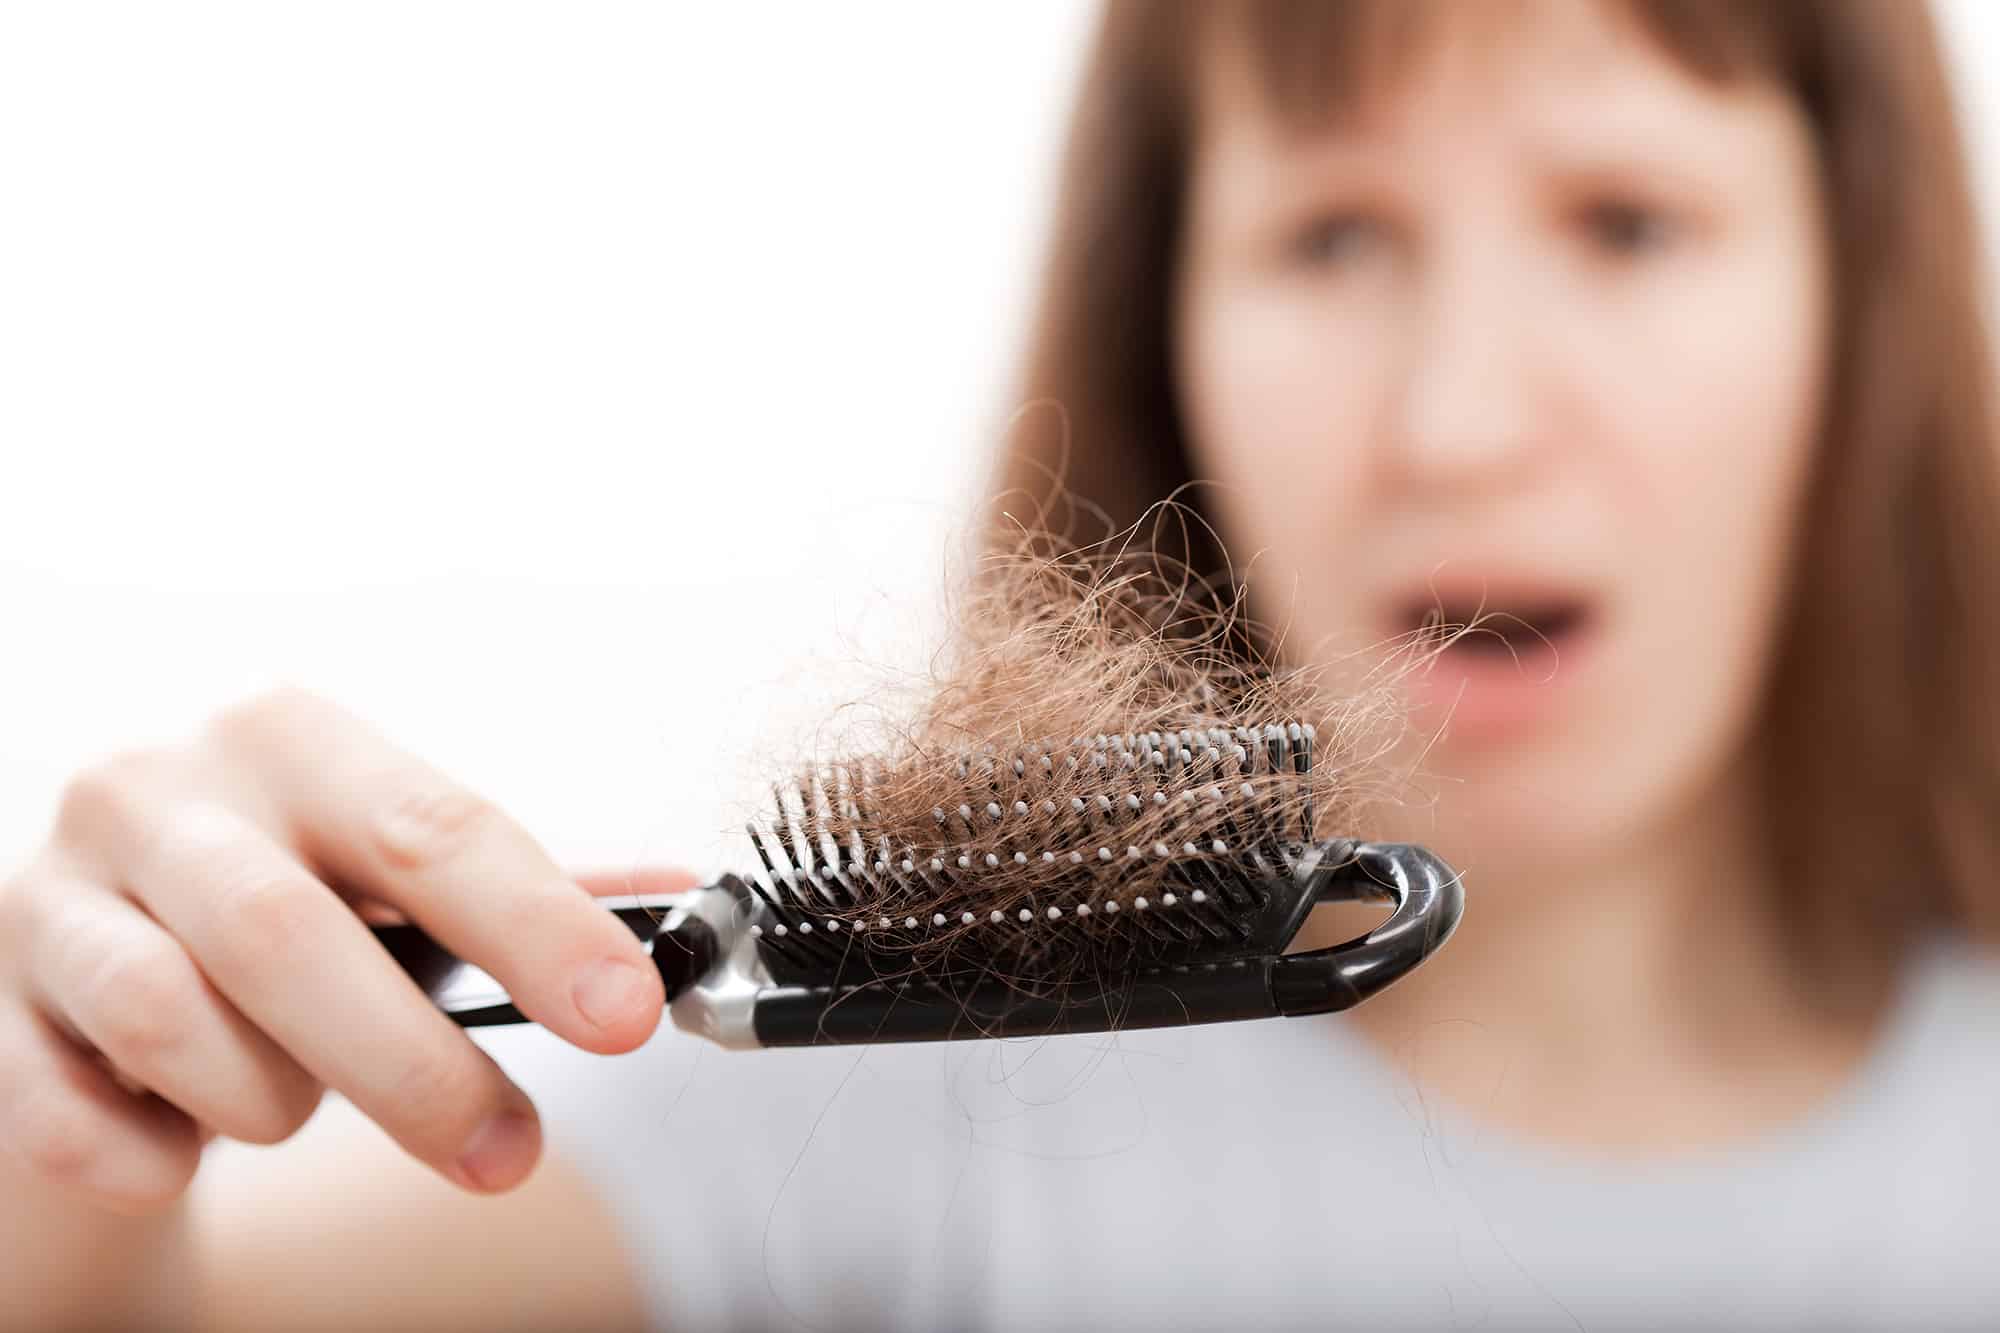 Can Creatine Cause Hair Loss?